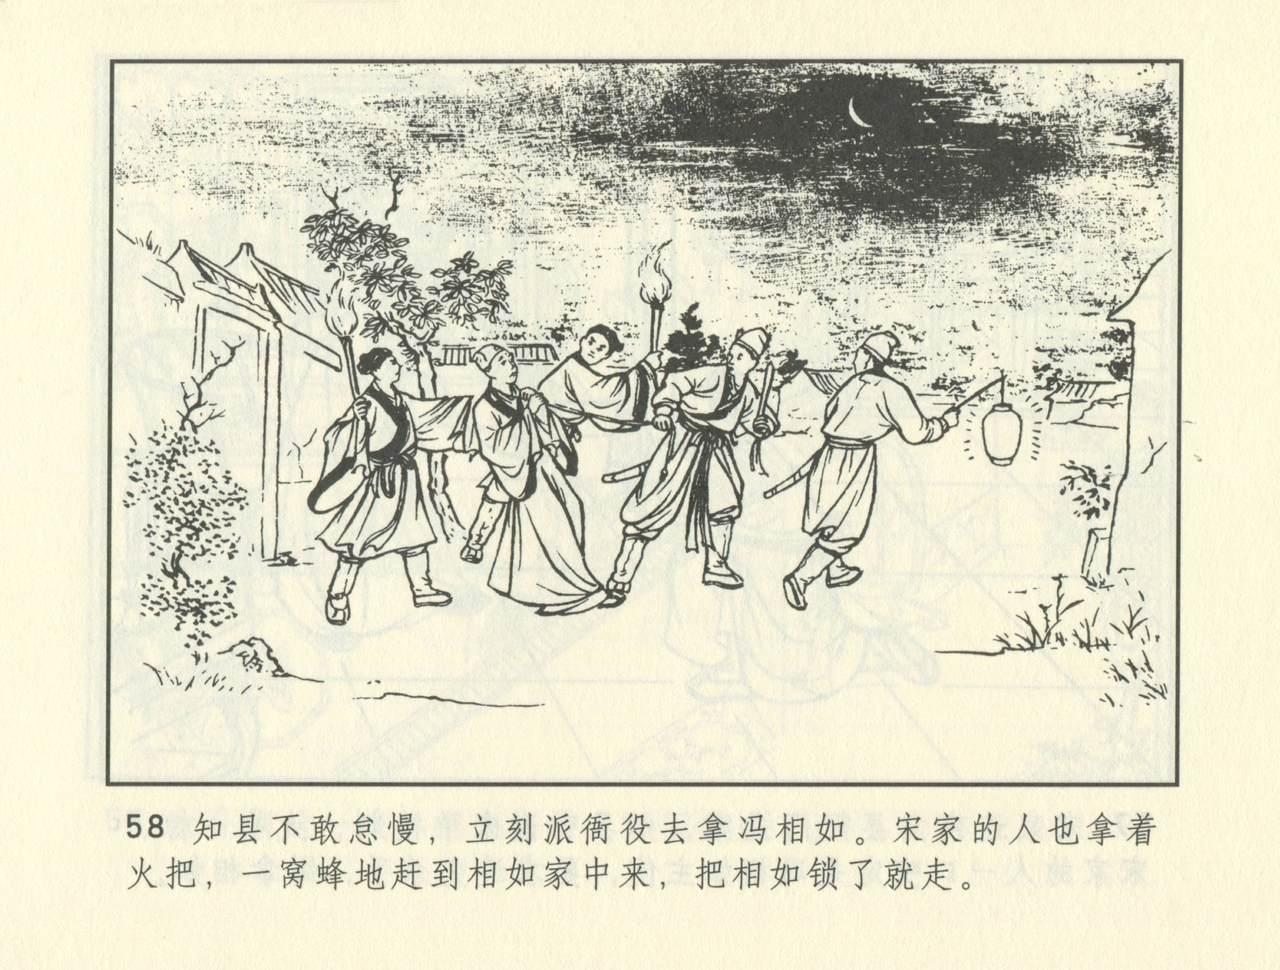 聊斋志异 张玮等绘 天津人民美术出版社 卷二十一 ~ 三十 398